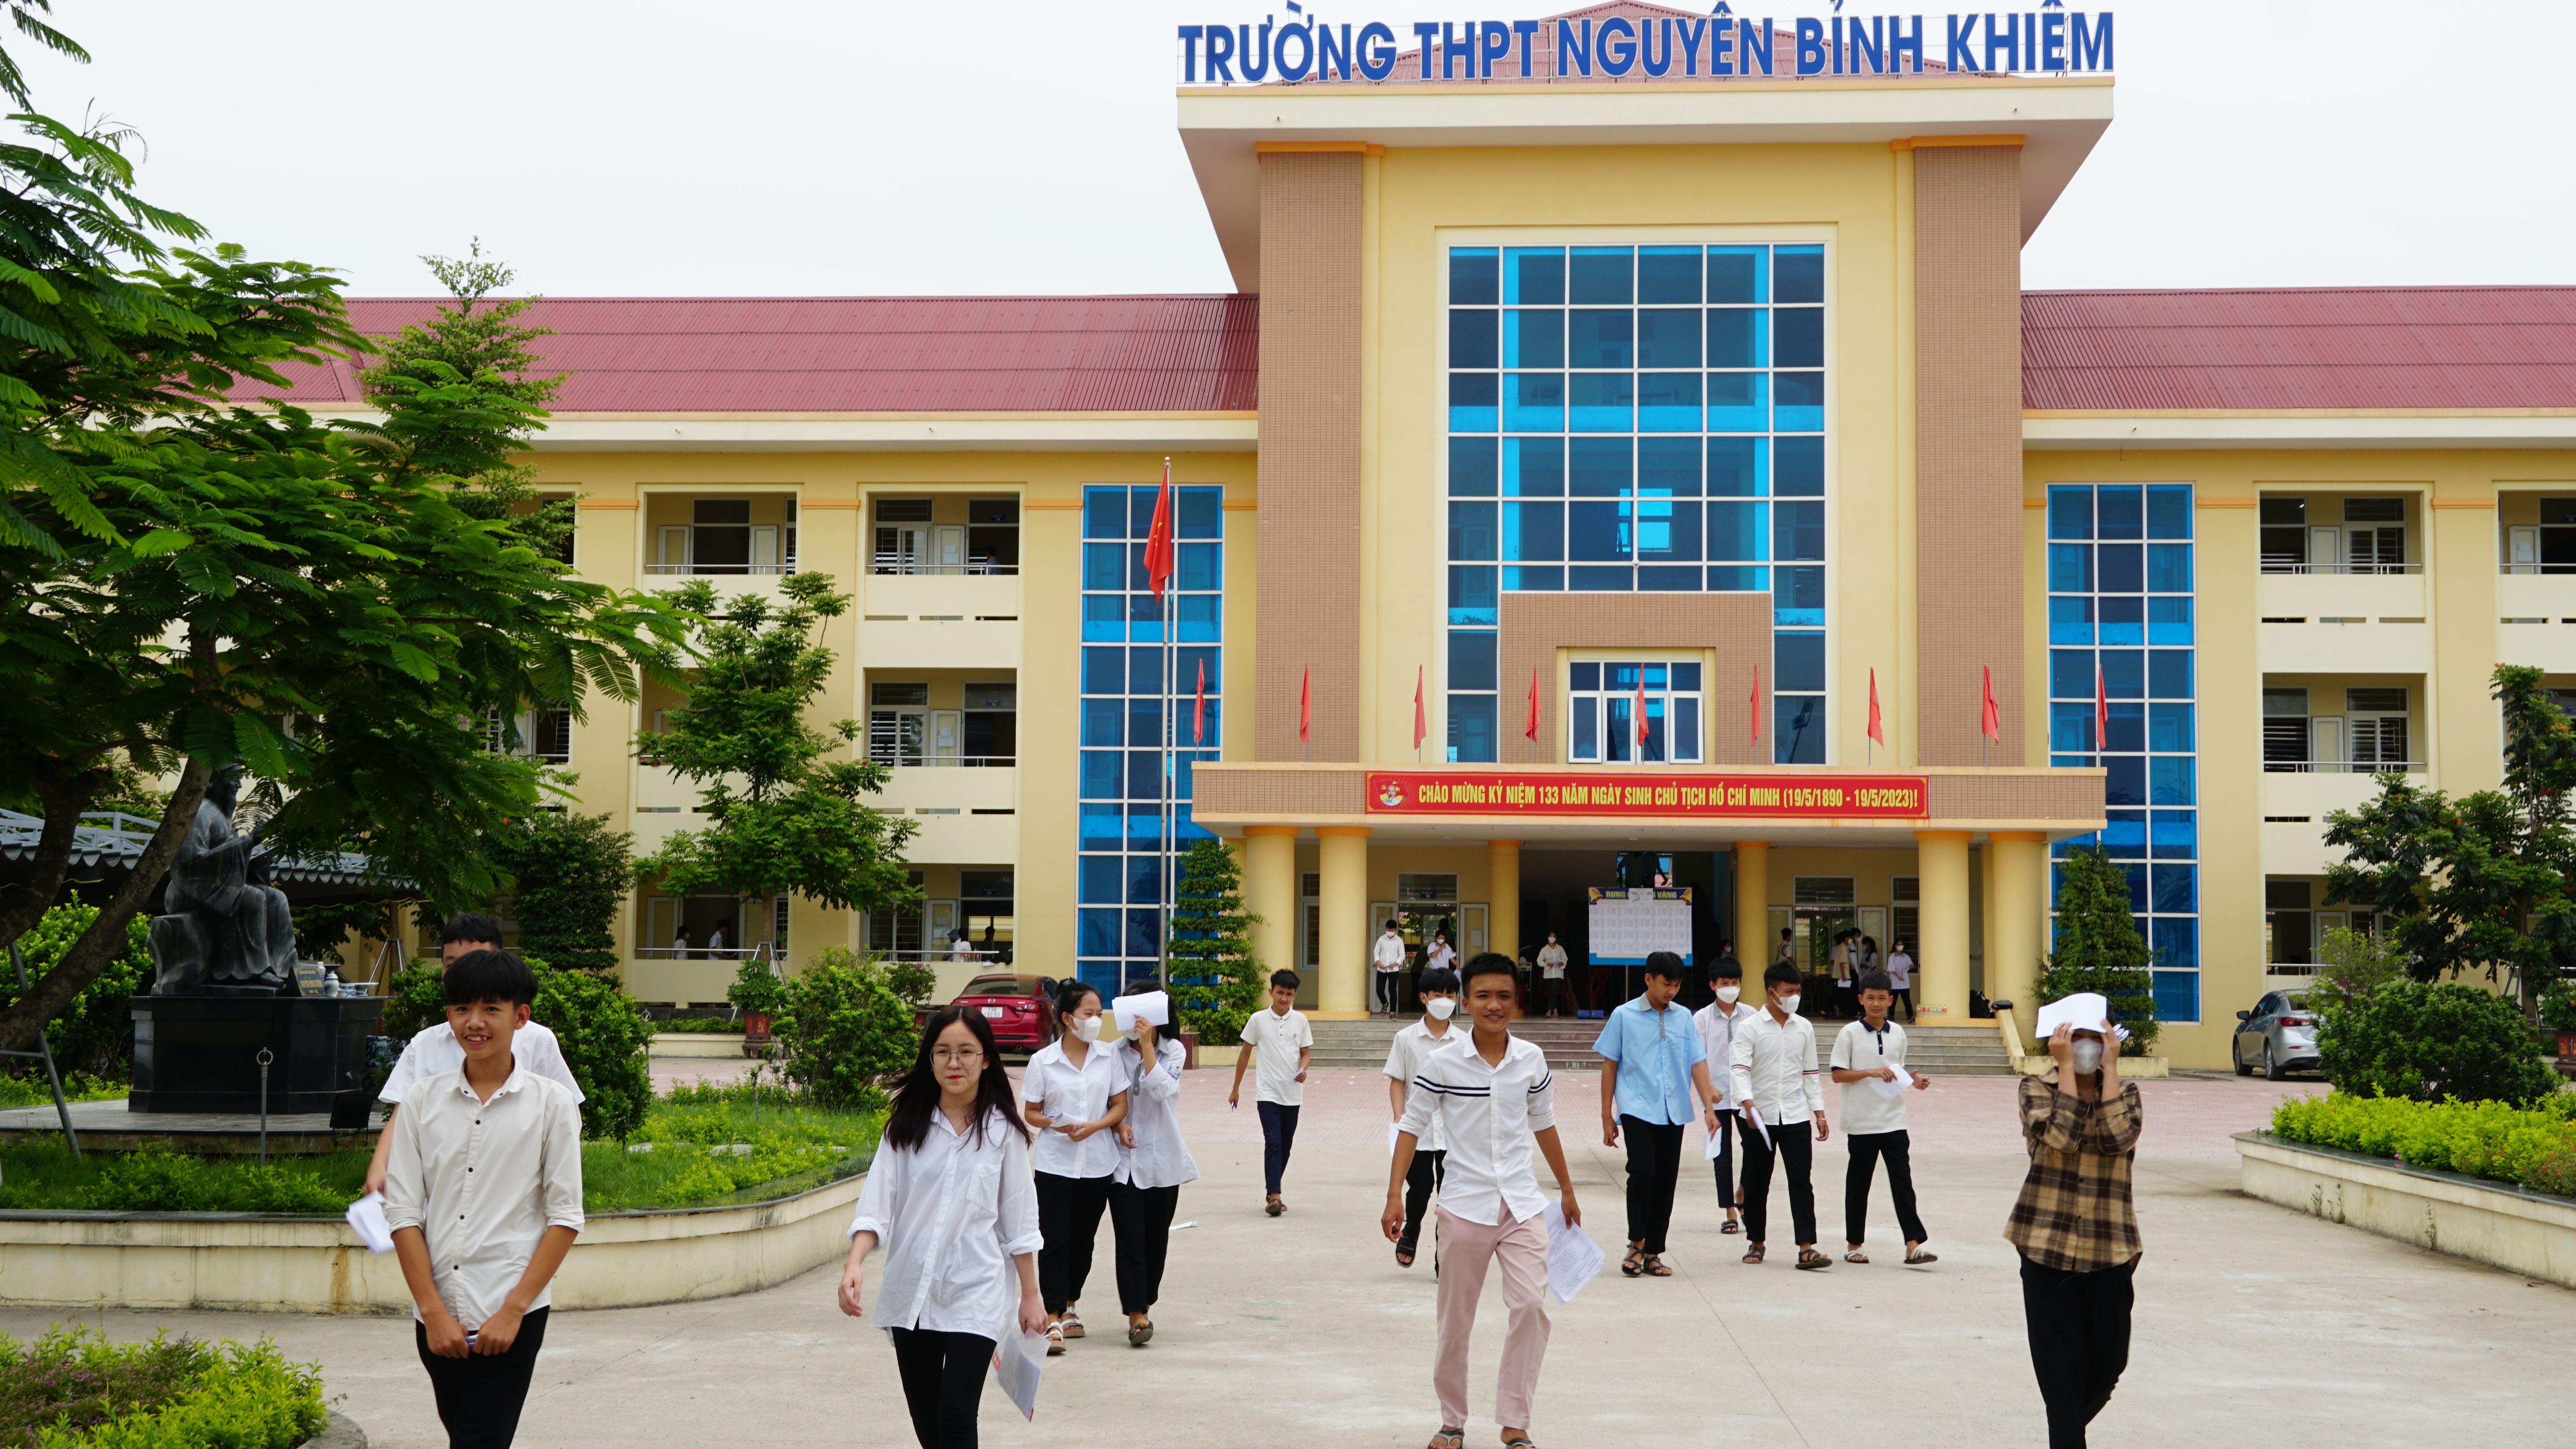 Các thi sinh ở điểm thi Trường THPT Nguyễn Bỉnh Khiêm hoàn thành 2 môn thi Ngữ văn và Tiếng Anh.